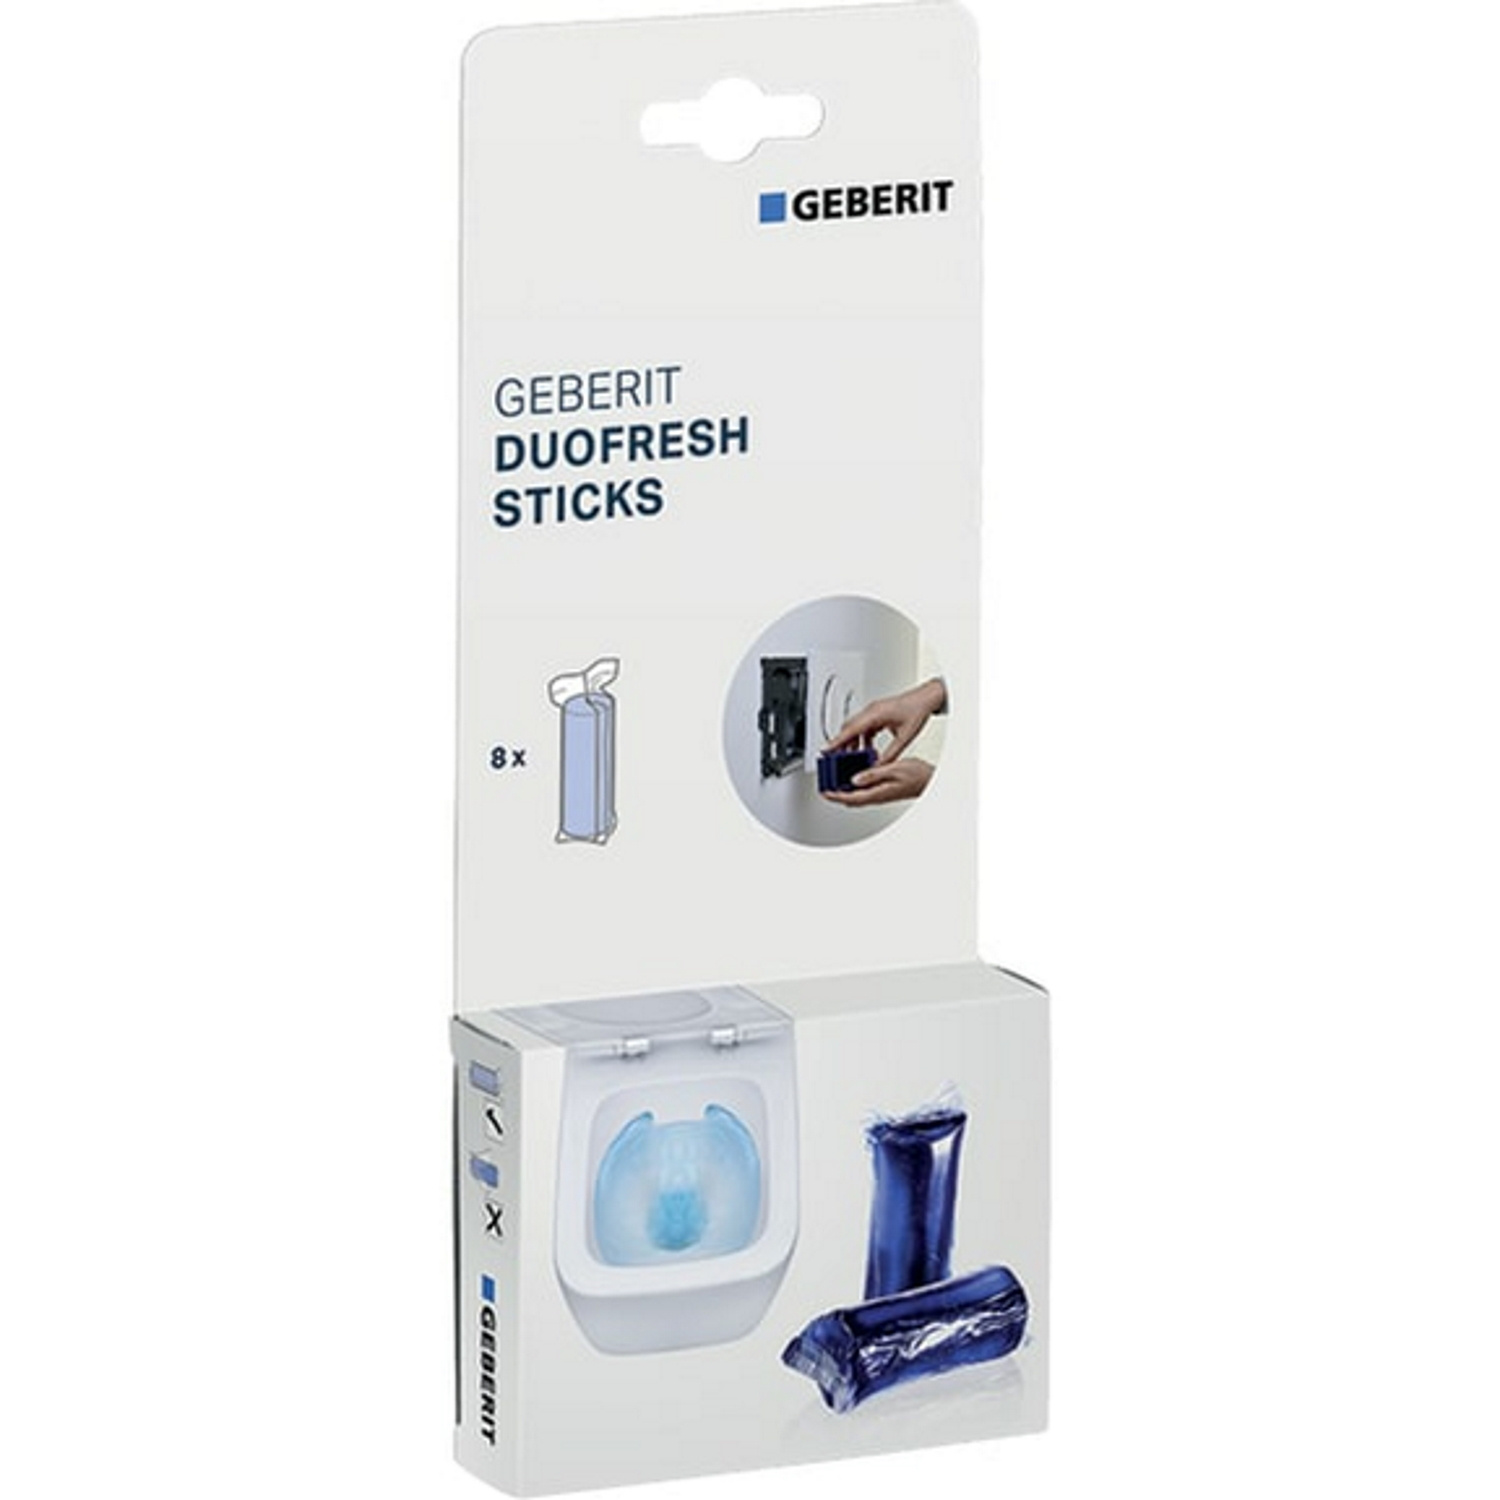 Geberit Toiletsticks Duofresh Voor Blauw Kleurend Spoelwater 8 Stuks